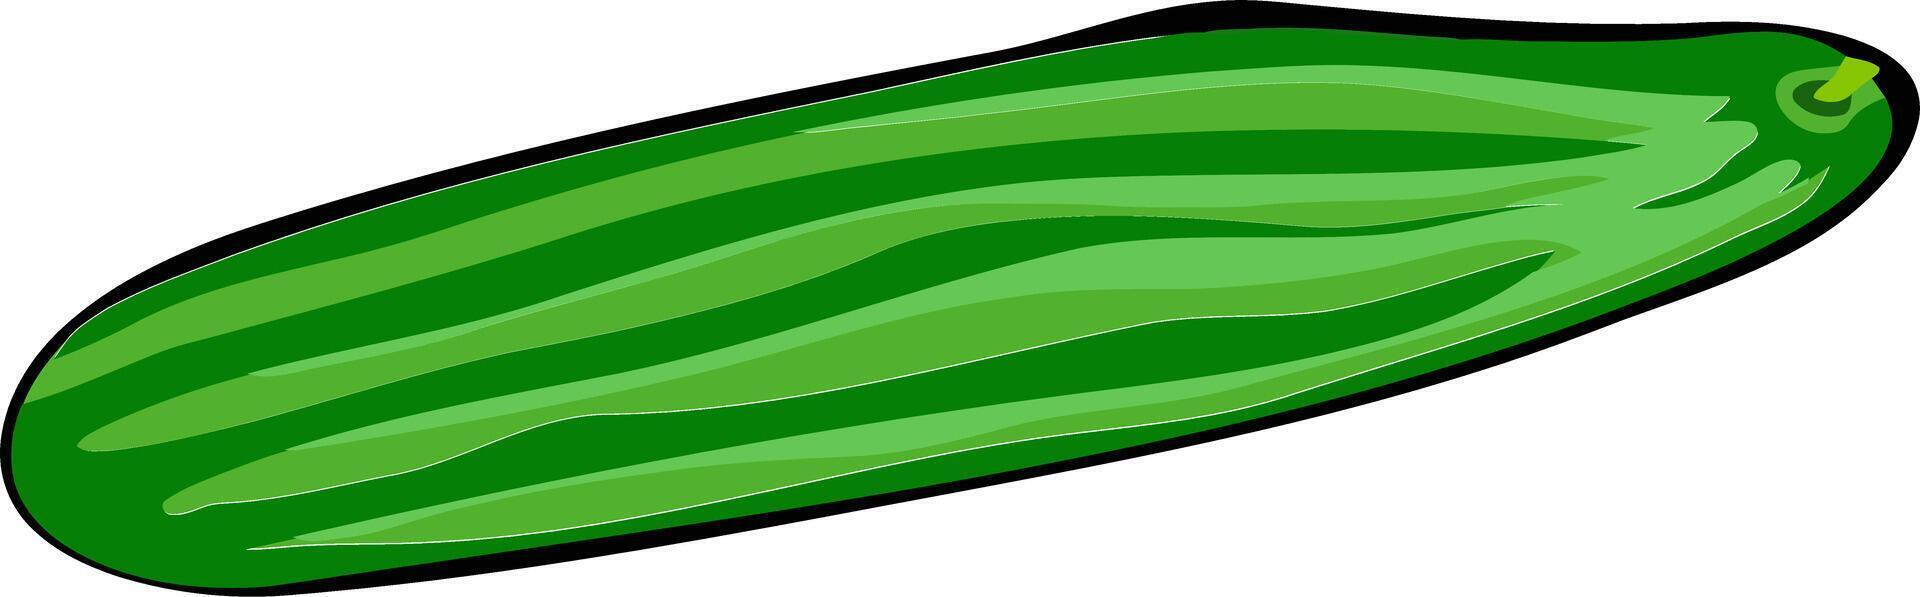 illustration av en gurka isolerat på en vit bakgrund vektor